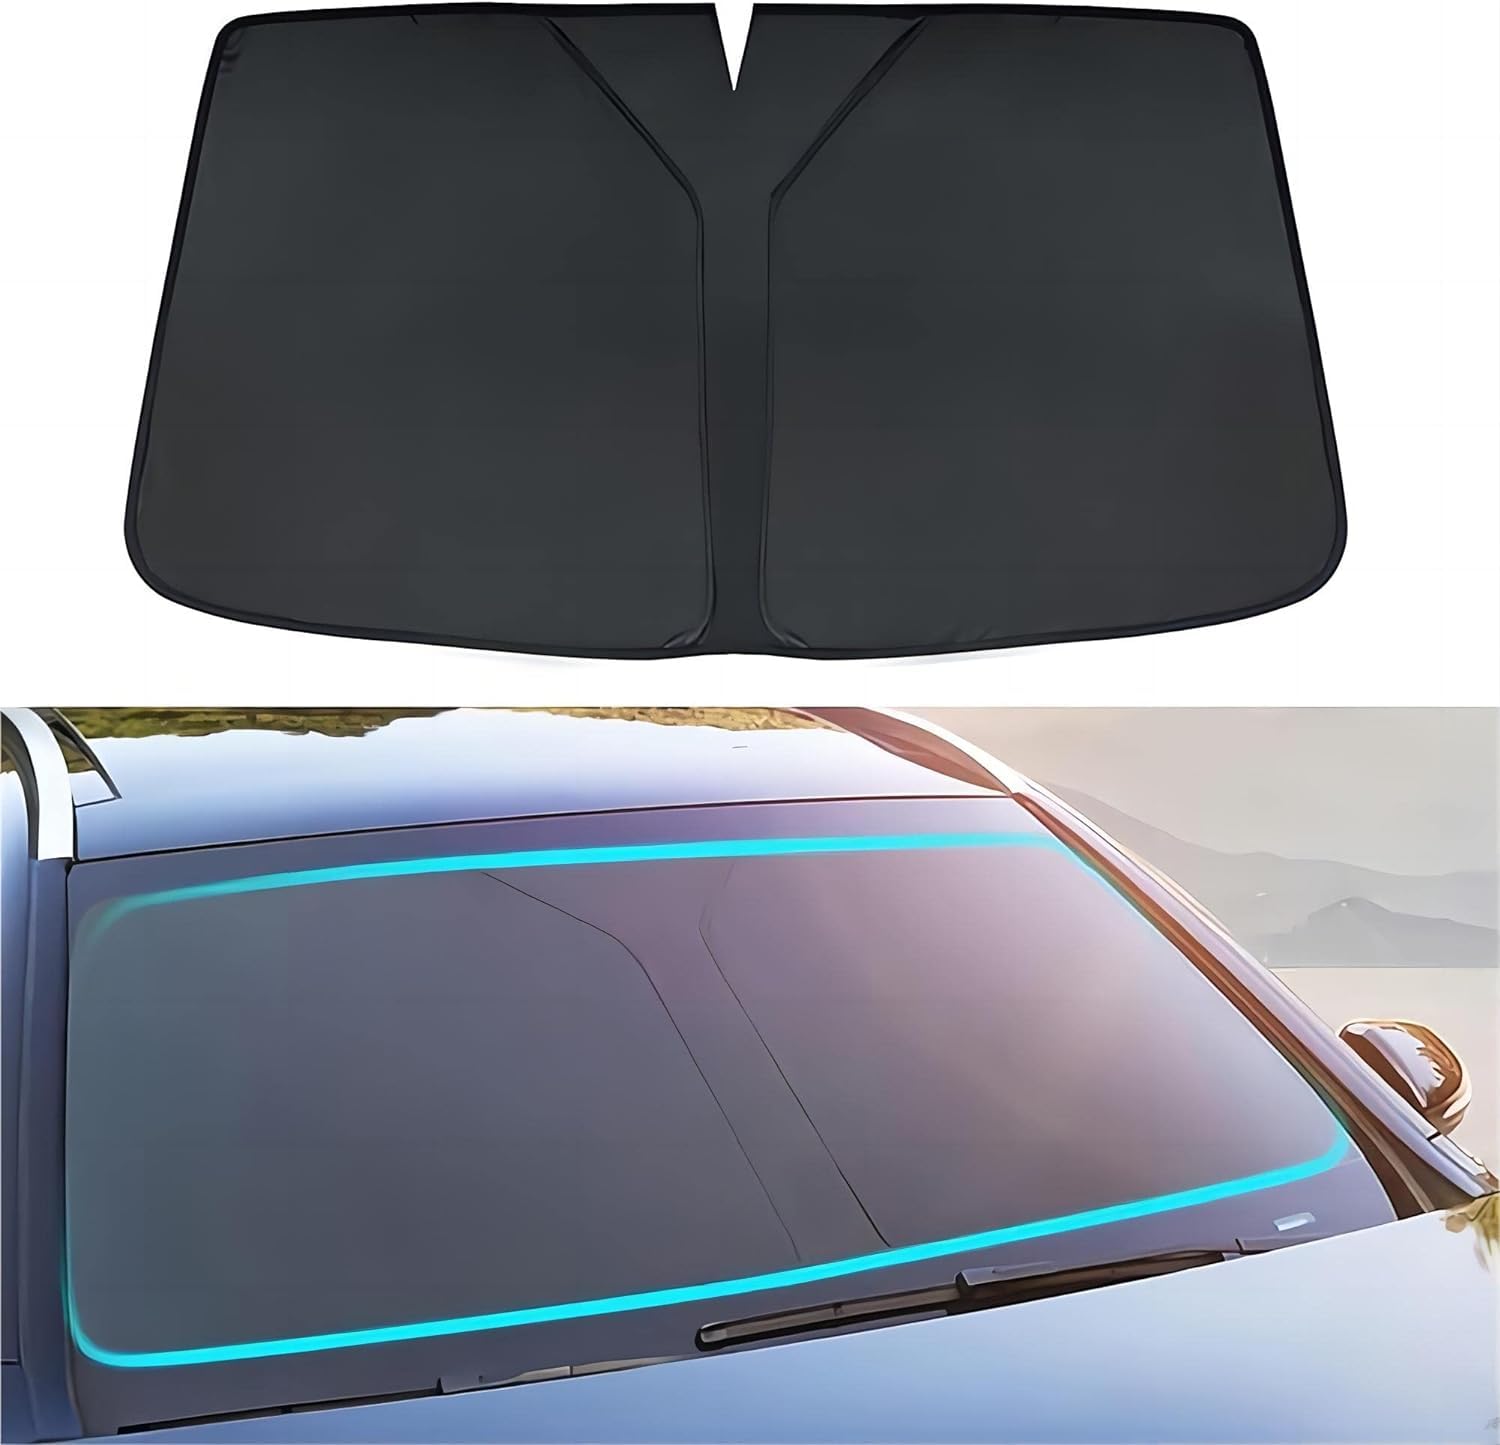 Sonnenschirm Auto Frontscheibe für Nissan Serena C25 2002-2010, Faltbarer Auto Sonnenschutz frontscheibe innen,UV-Schutz,Wärmeisolierung,Black von SKLQASWZ